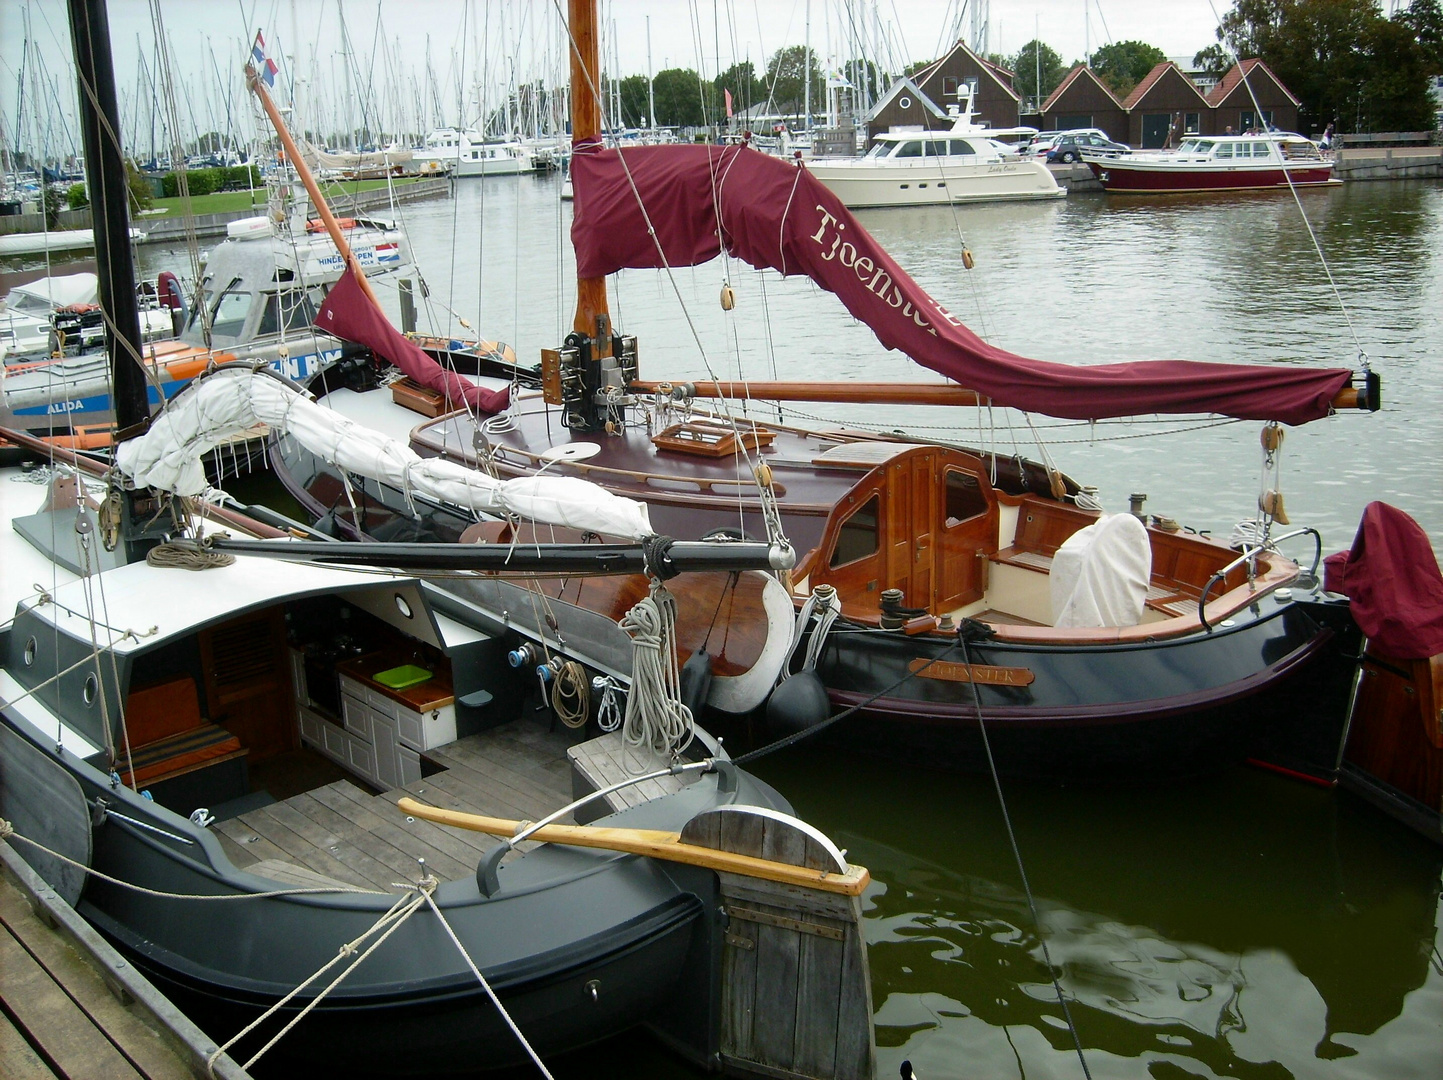 Yachthaven van Hindeloopen am Ijsselmeer, Nederland  - Die Tjoenster, eine Lemsteraak